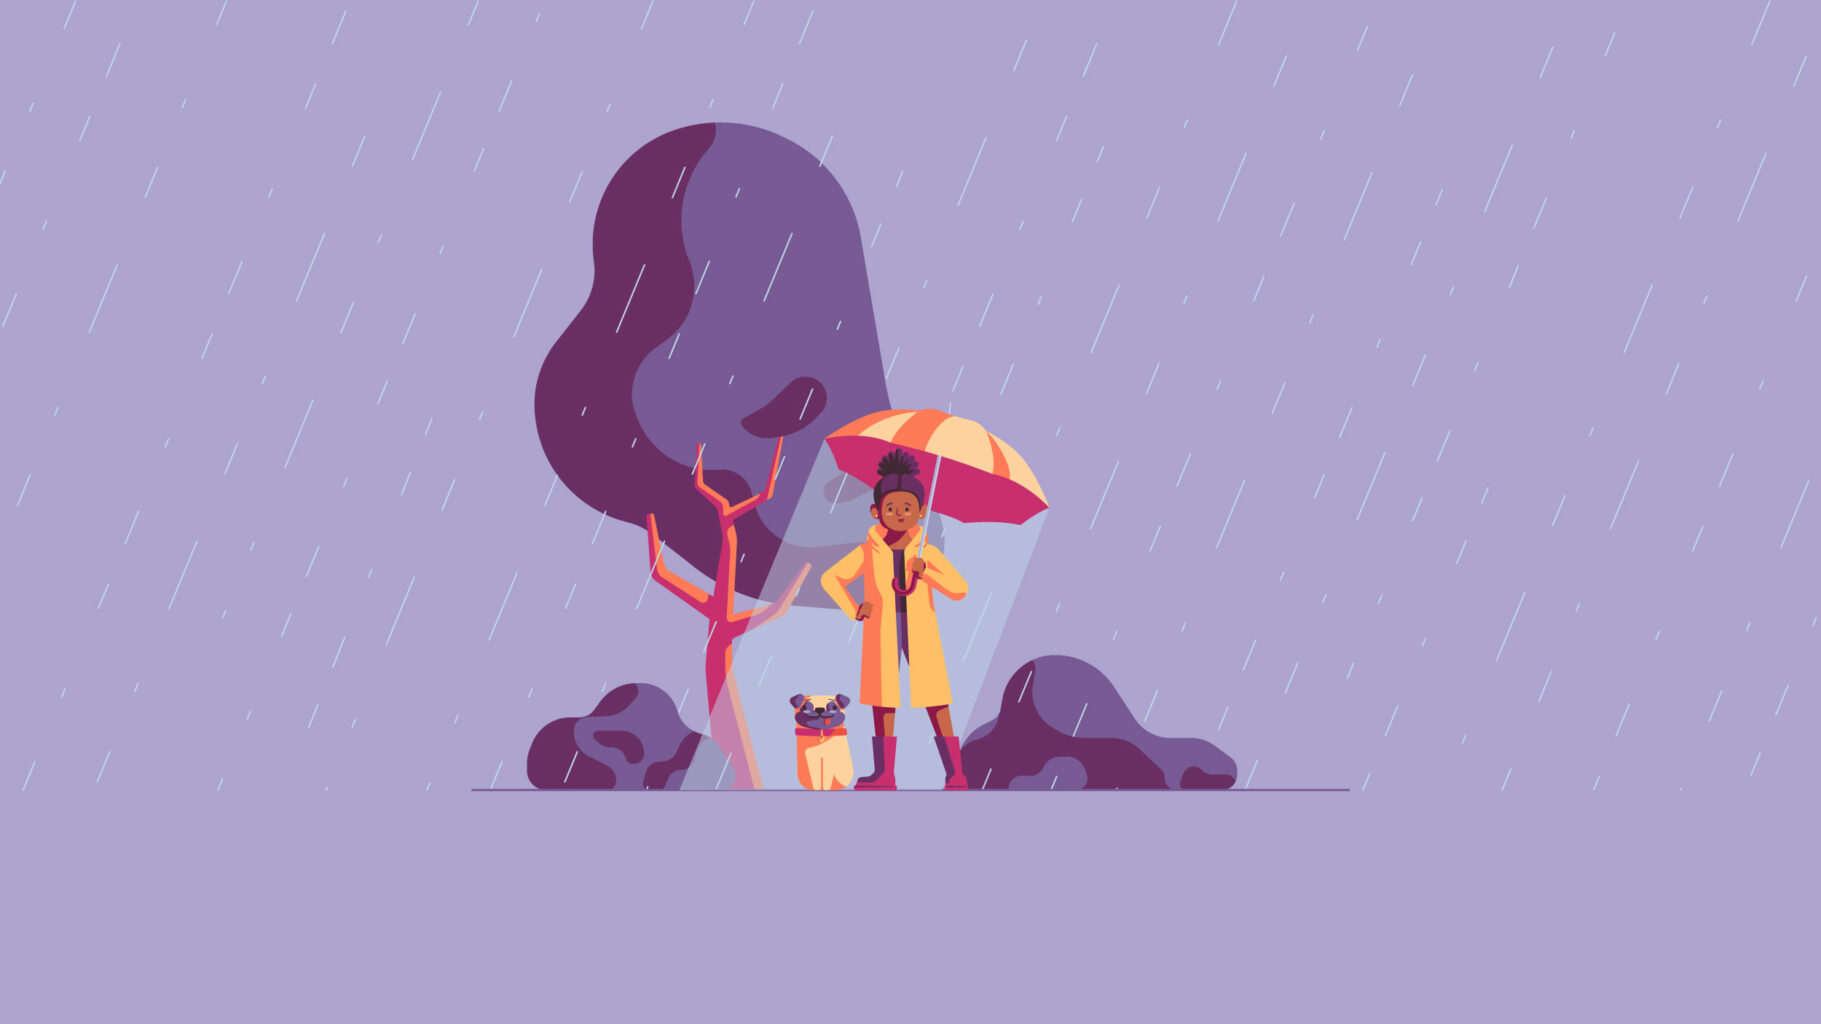 Illustration system rainy day scene